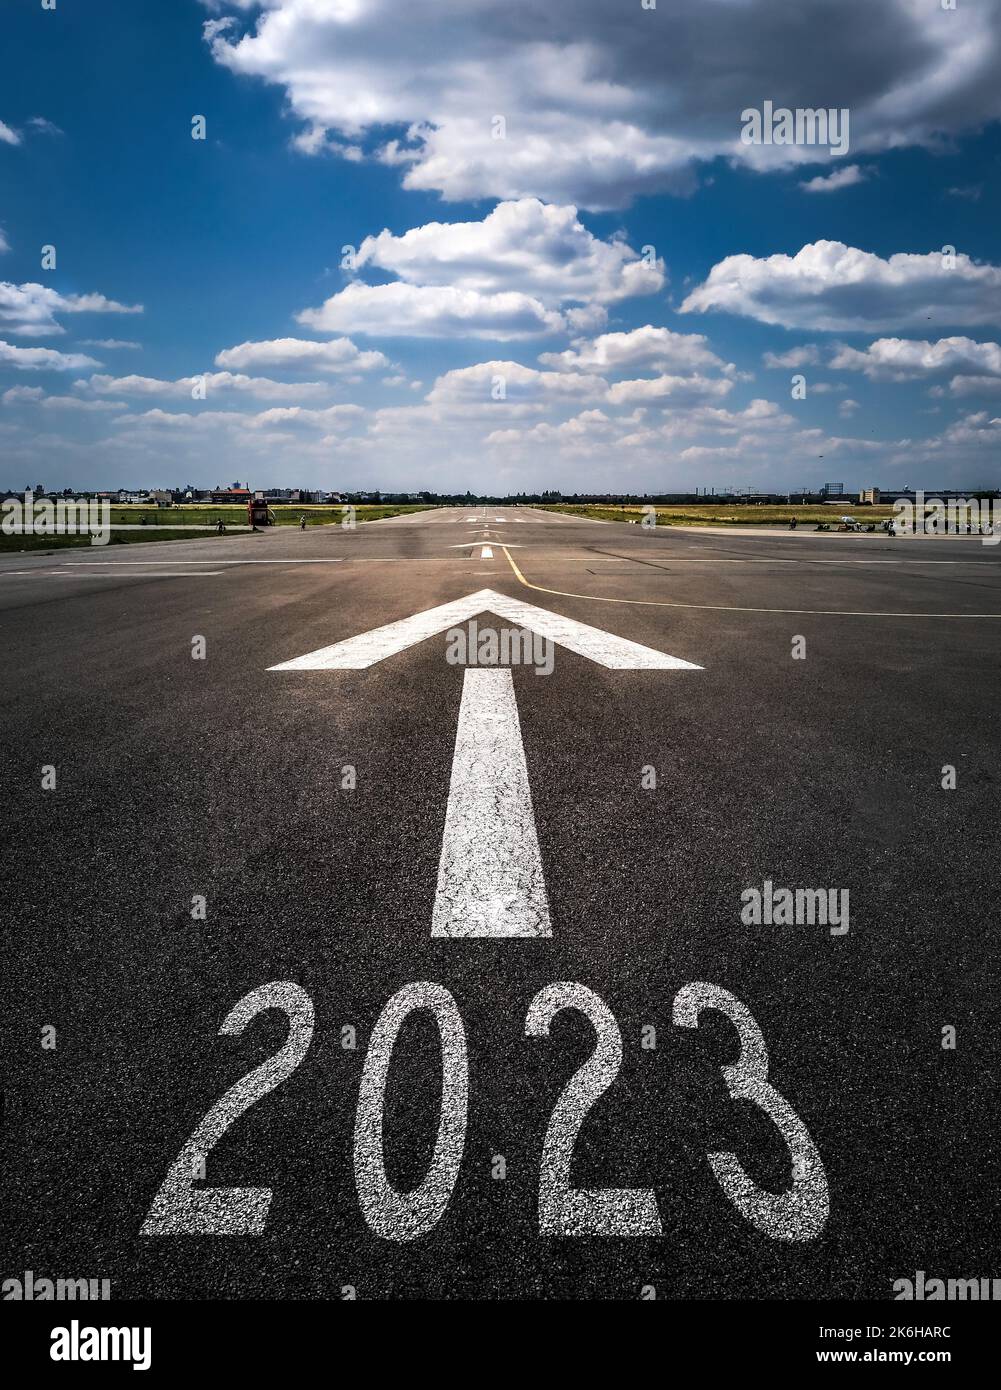 Nouvelle année 2023 - concept de planification et de défi, stratégie d'affaires, opportunité, espoir, nouveau changement de vie Banque D'Images